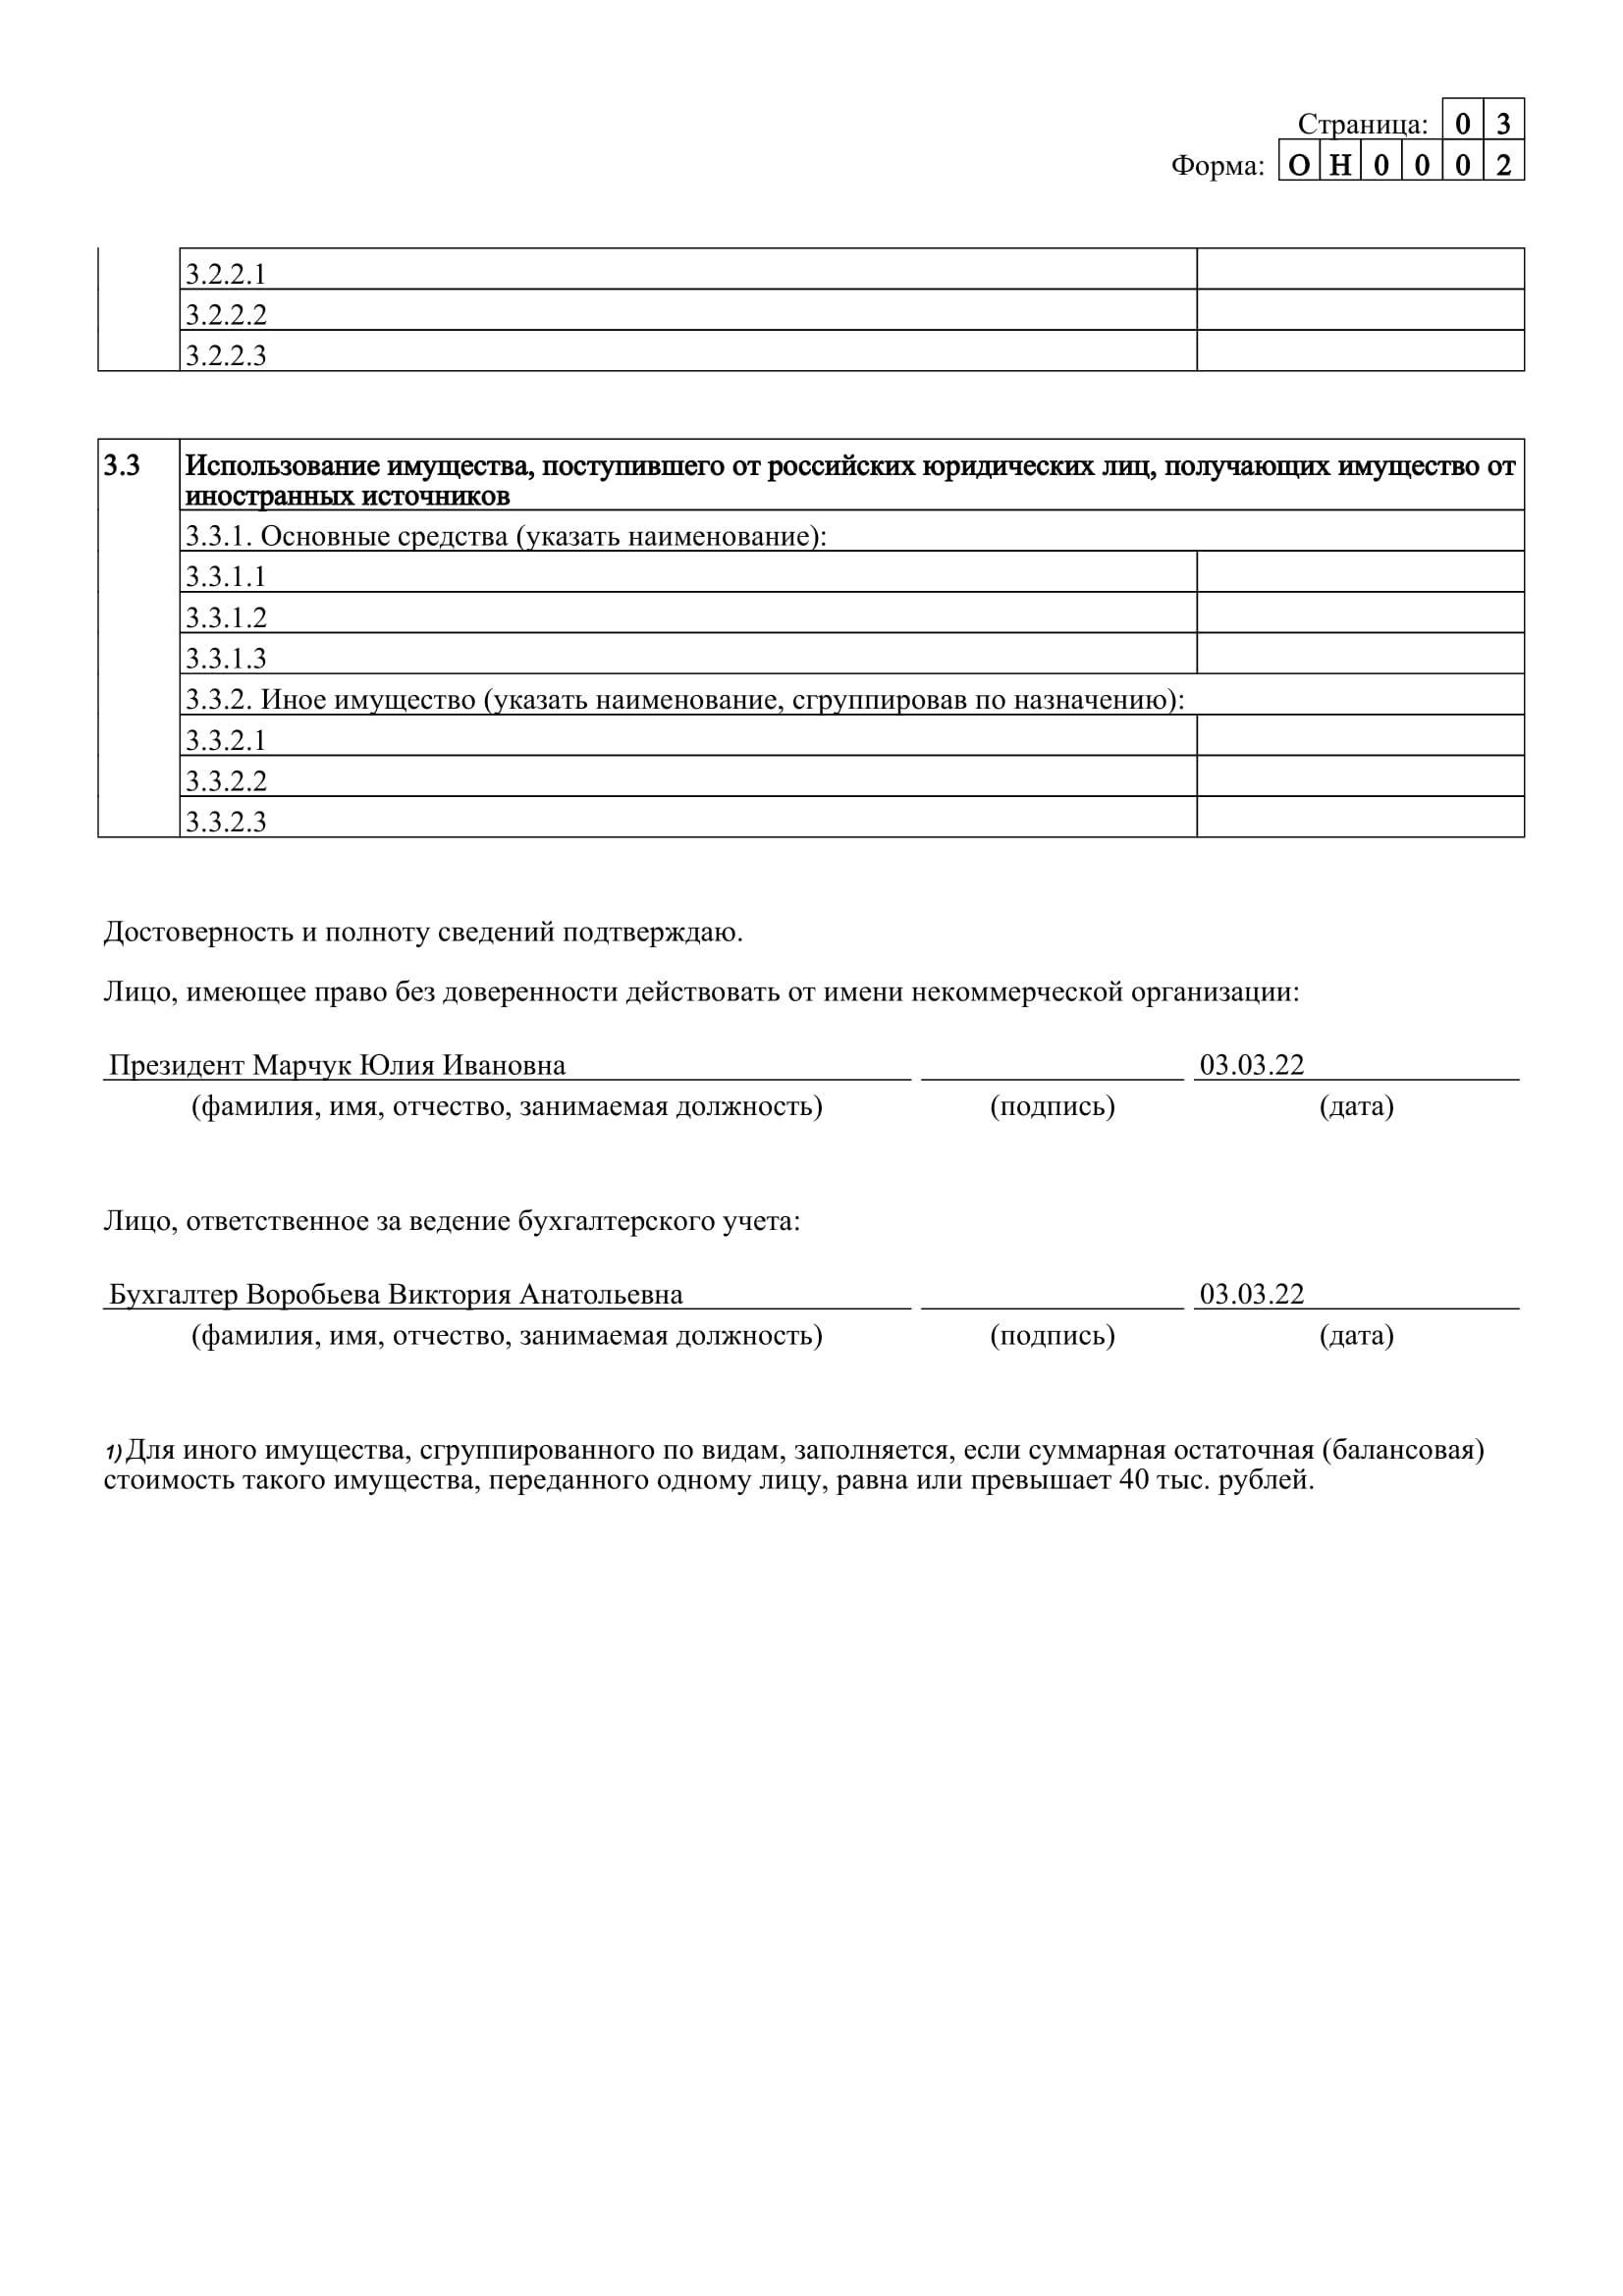 Отчет Адвокатской палаты в Минюст за 2021 год